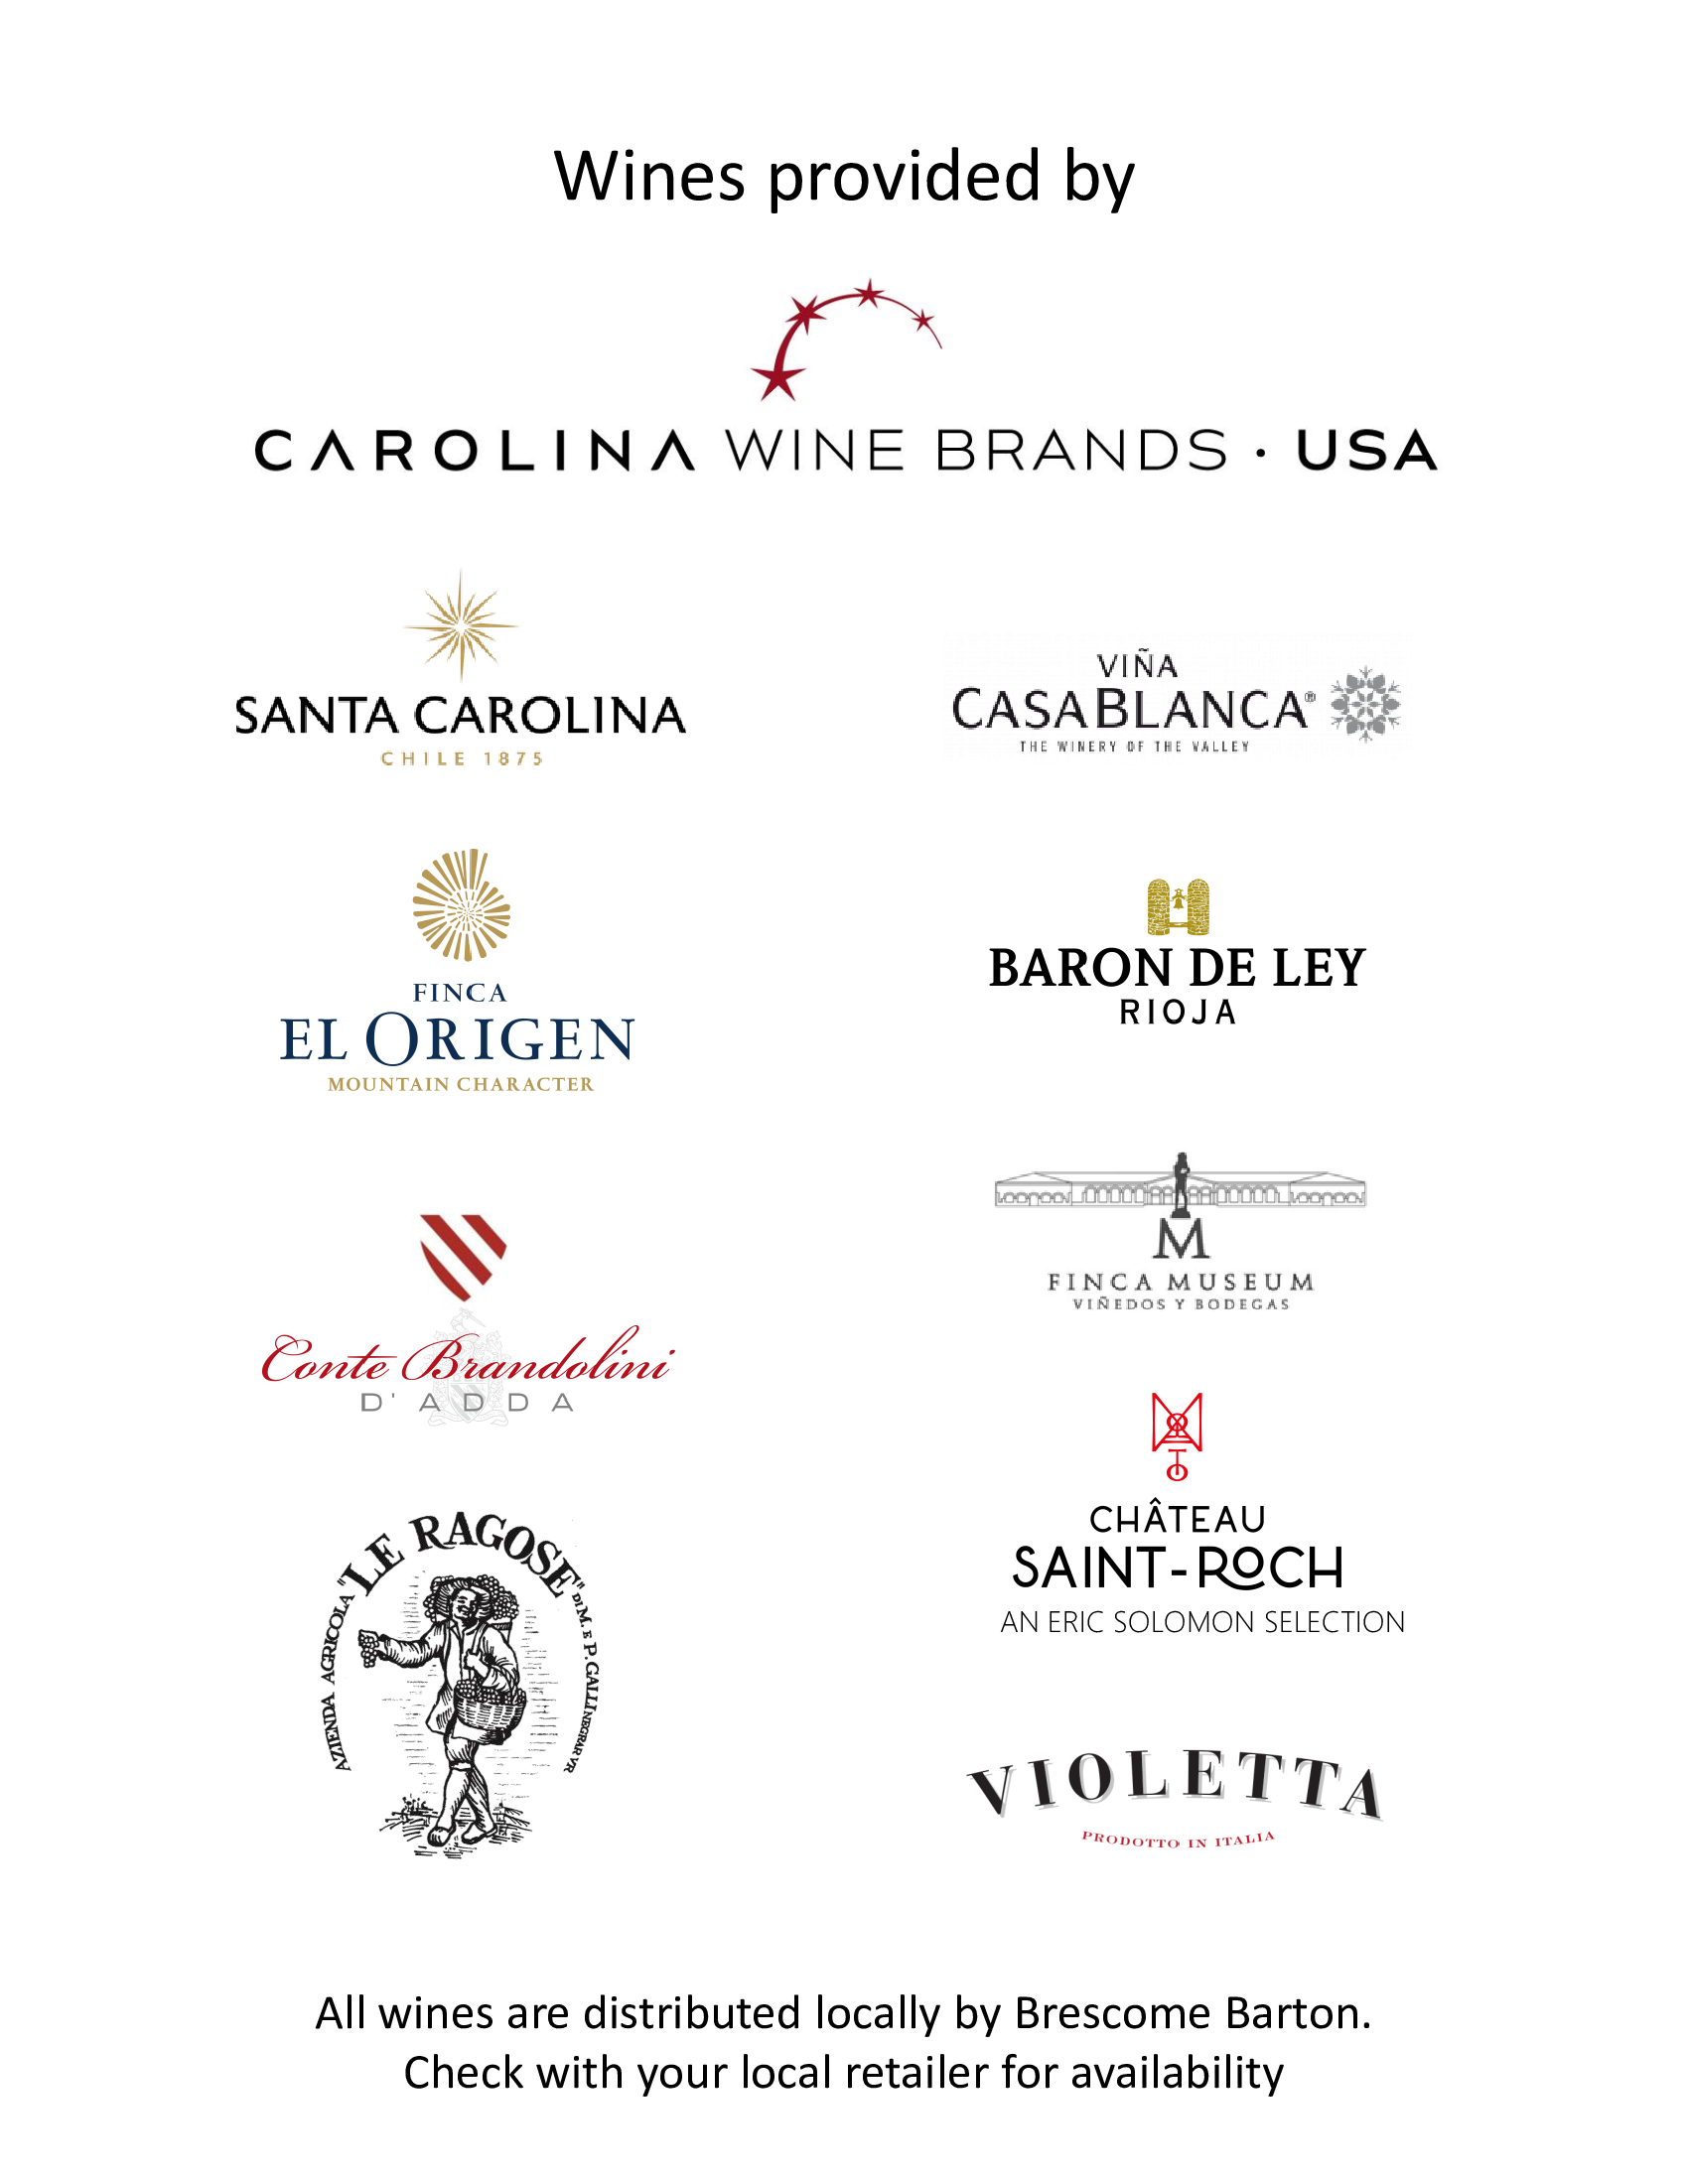 Carolina Wine Brands